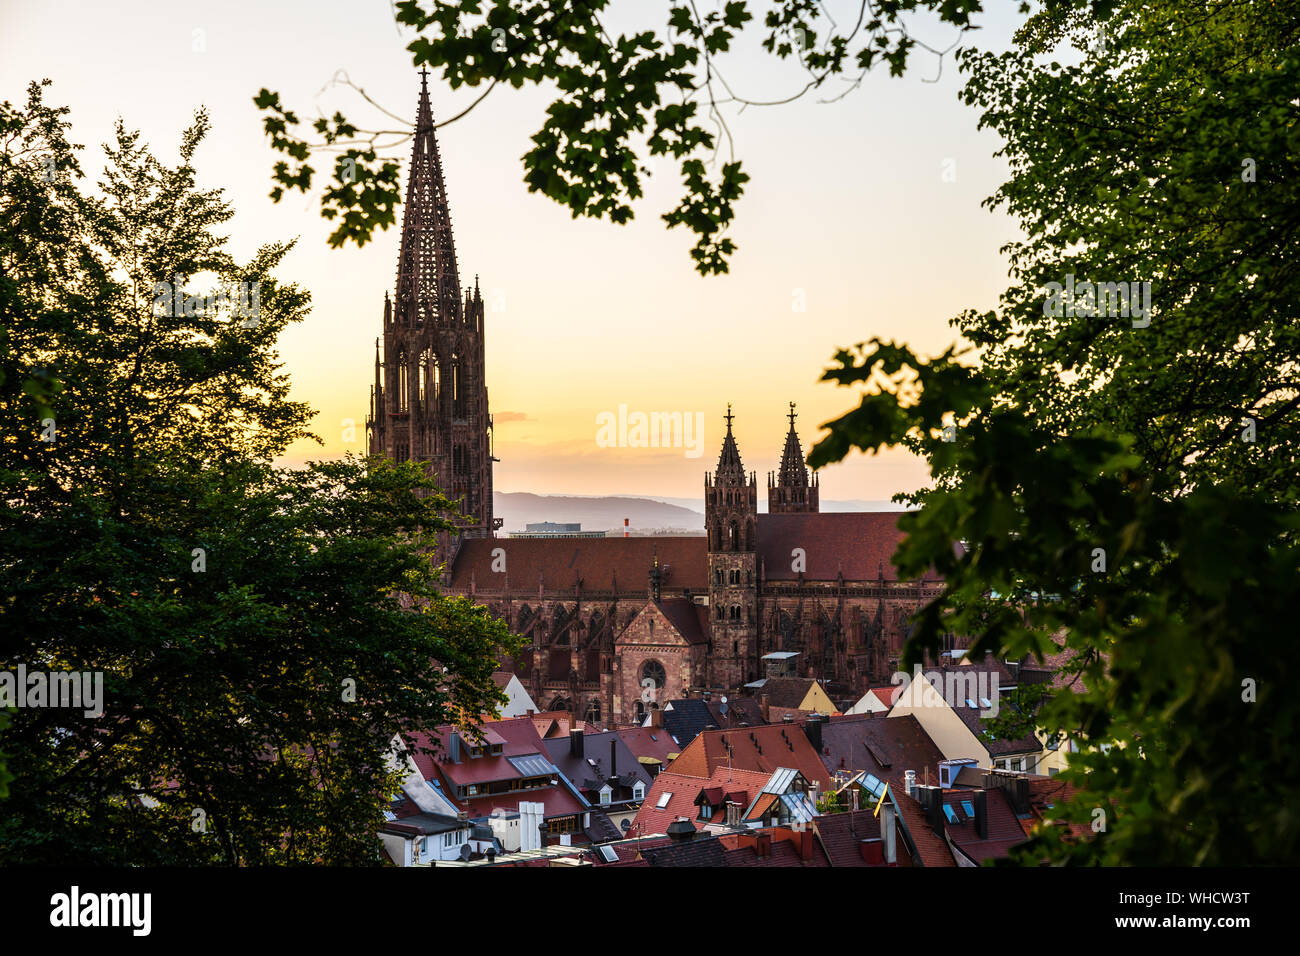 Germania, famoso e antico muenster o minster cattedrale edificio di architettura gotica visto attraverso il verde delle foglie di un albero sopra i tetti della città di Friburgo Foto Stock